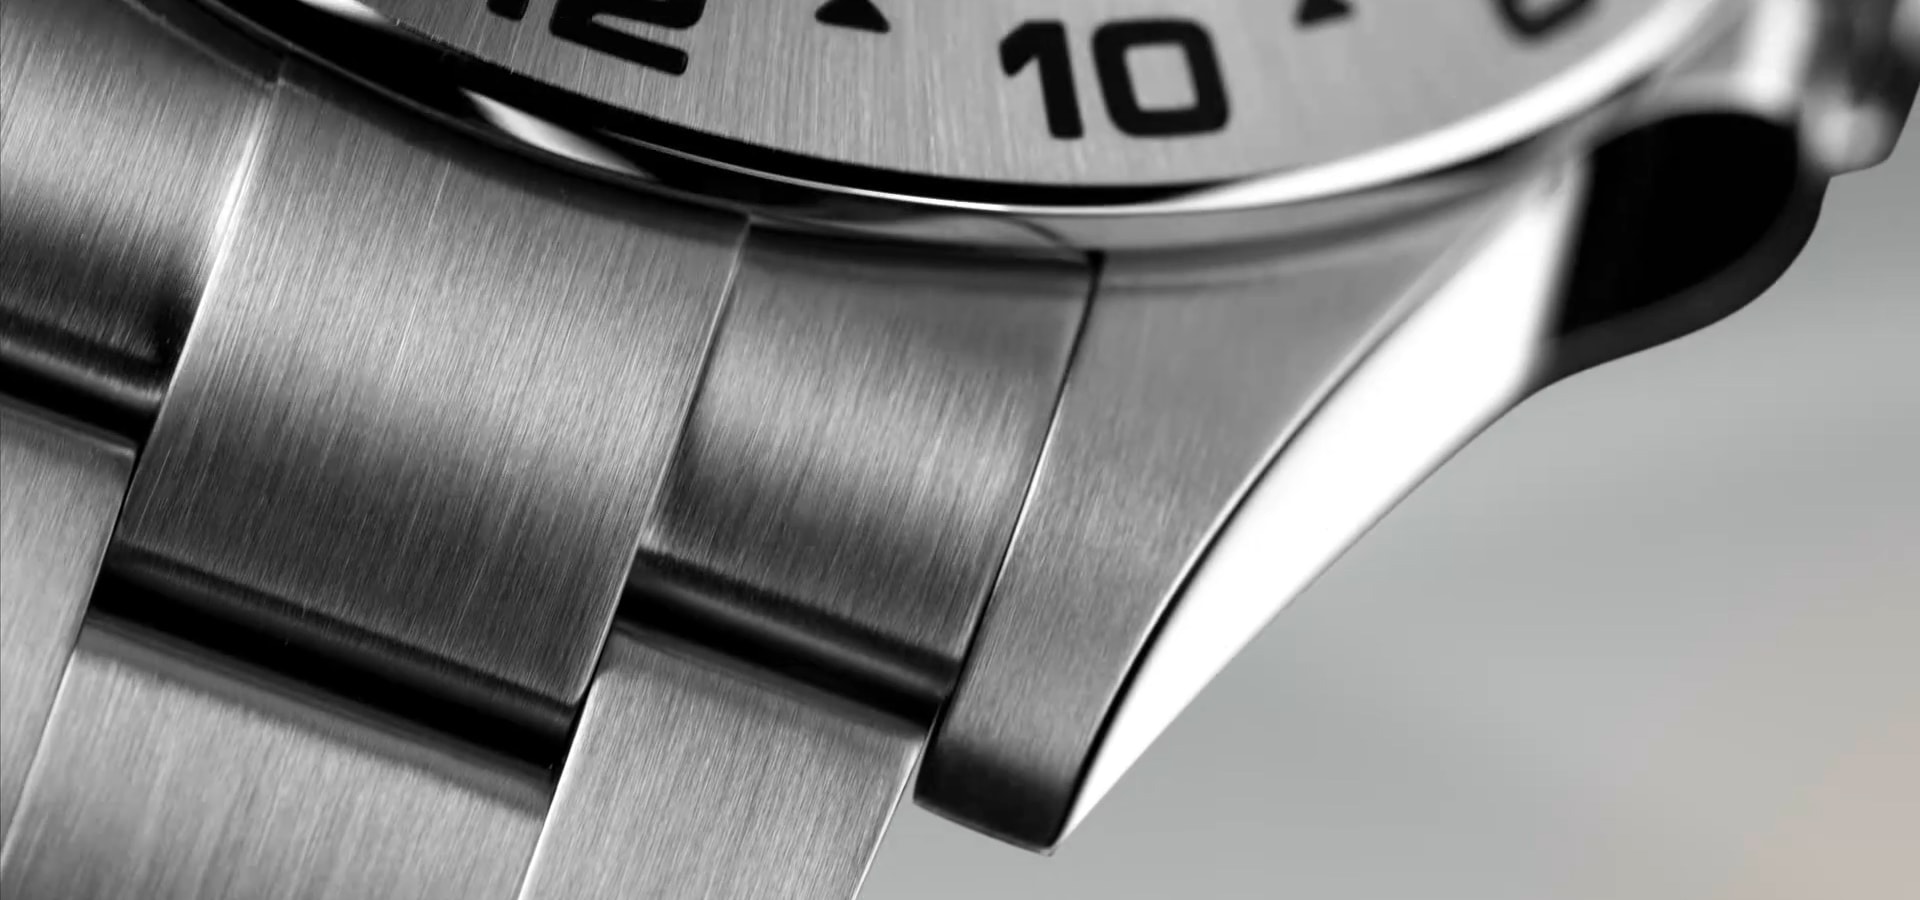 Rolex Watch Collection - Find